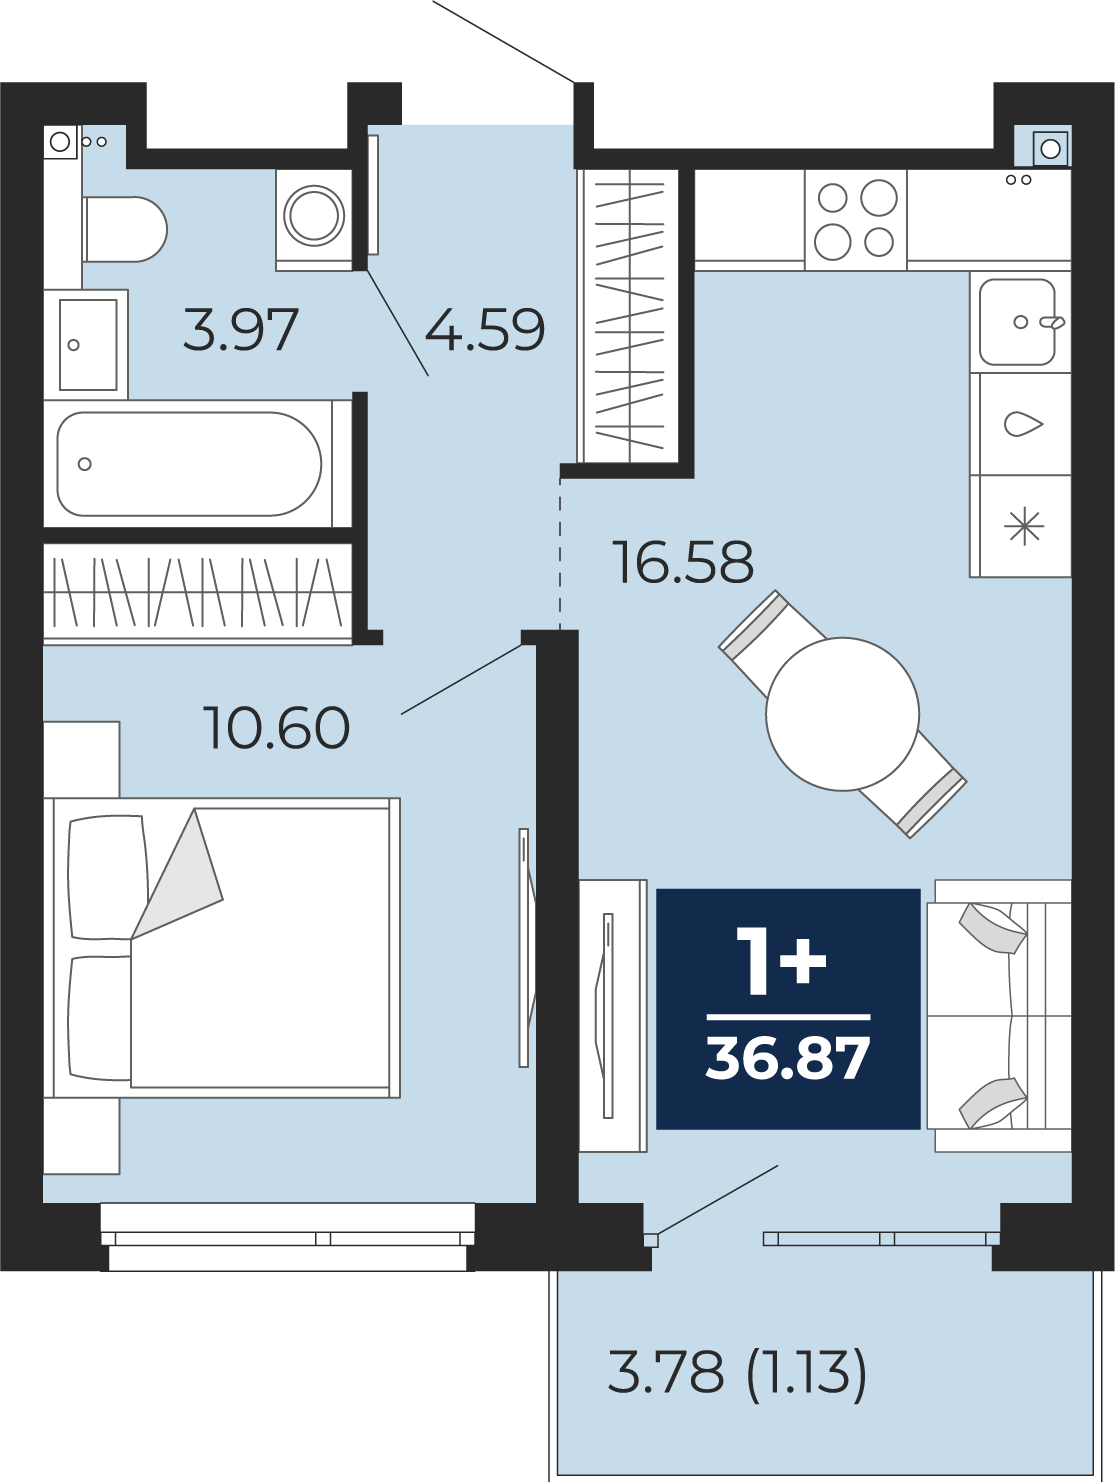 Квартира № 146, 1-комнатная, 36.87 кв. м, 4 этаж